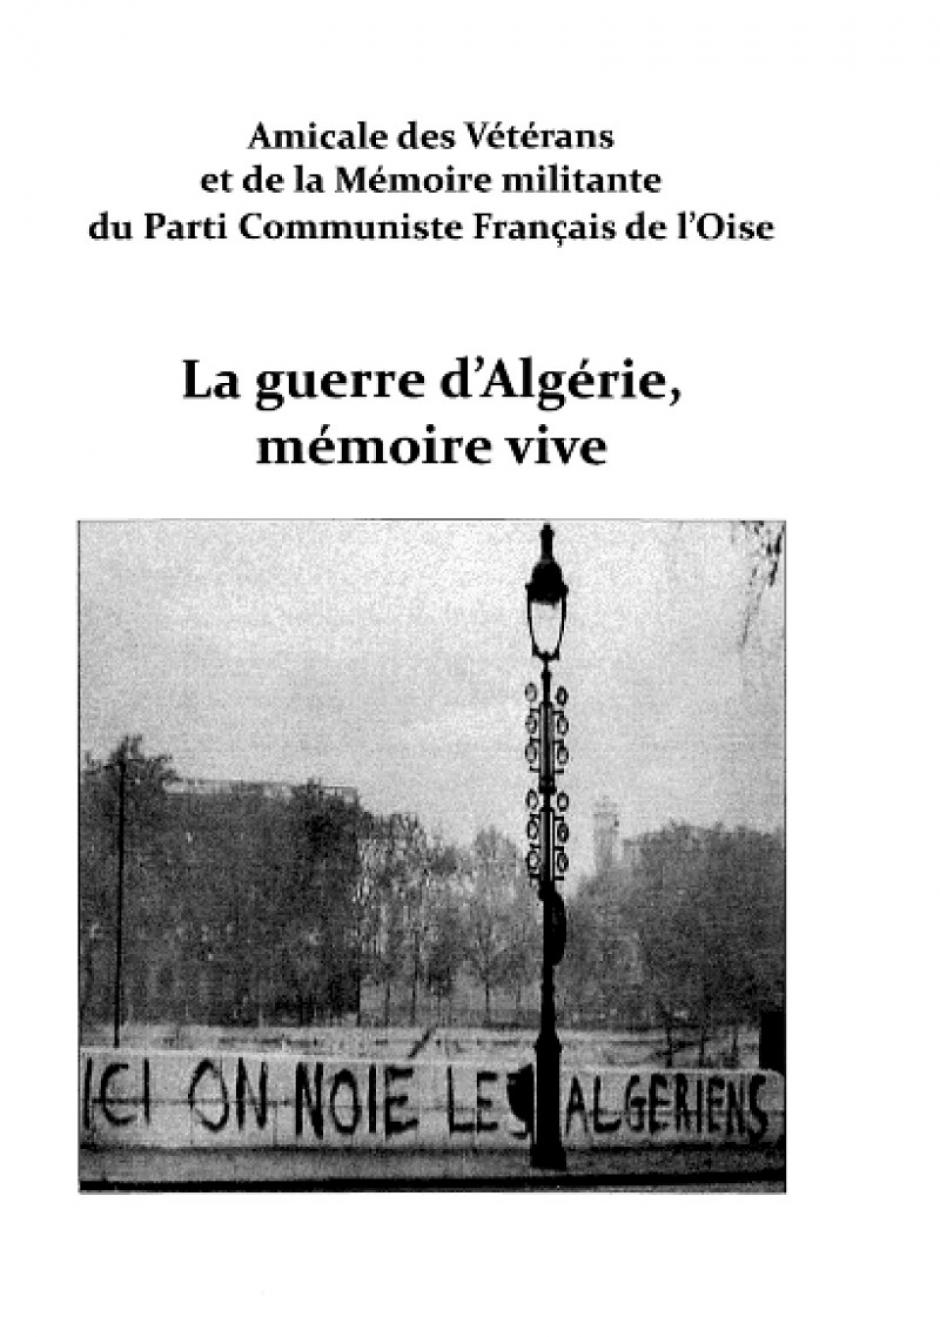 La guerre d'Algérie, mémoire vive